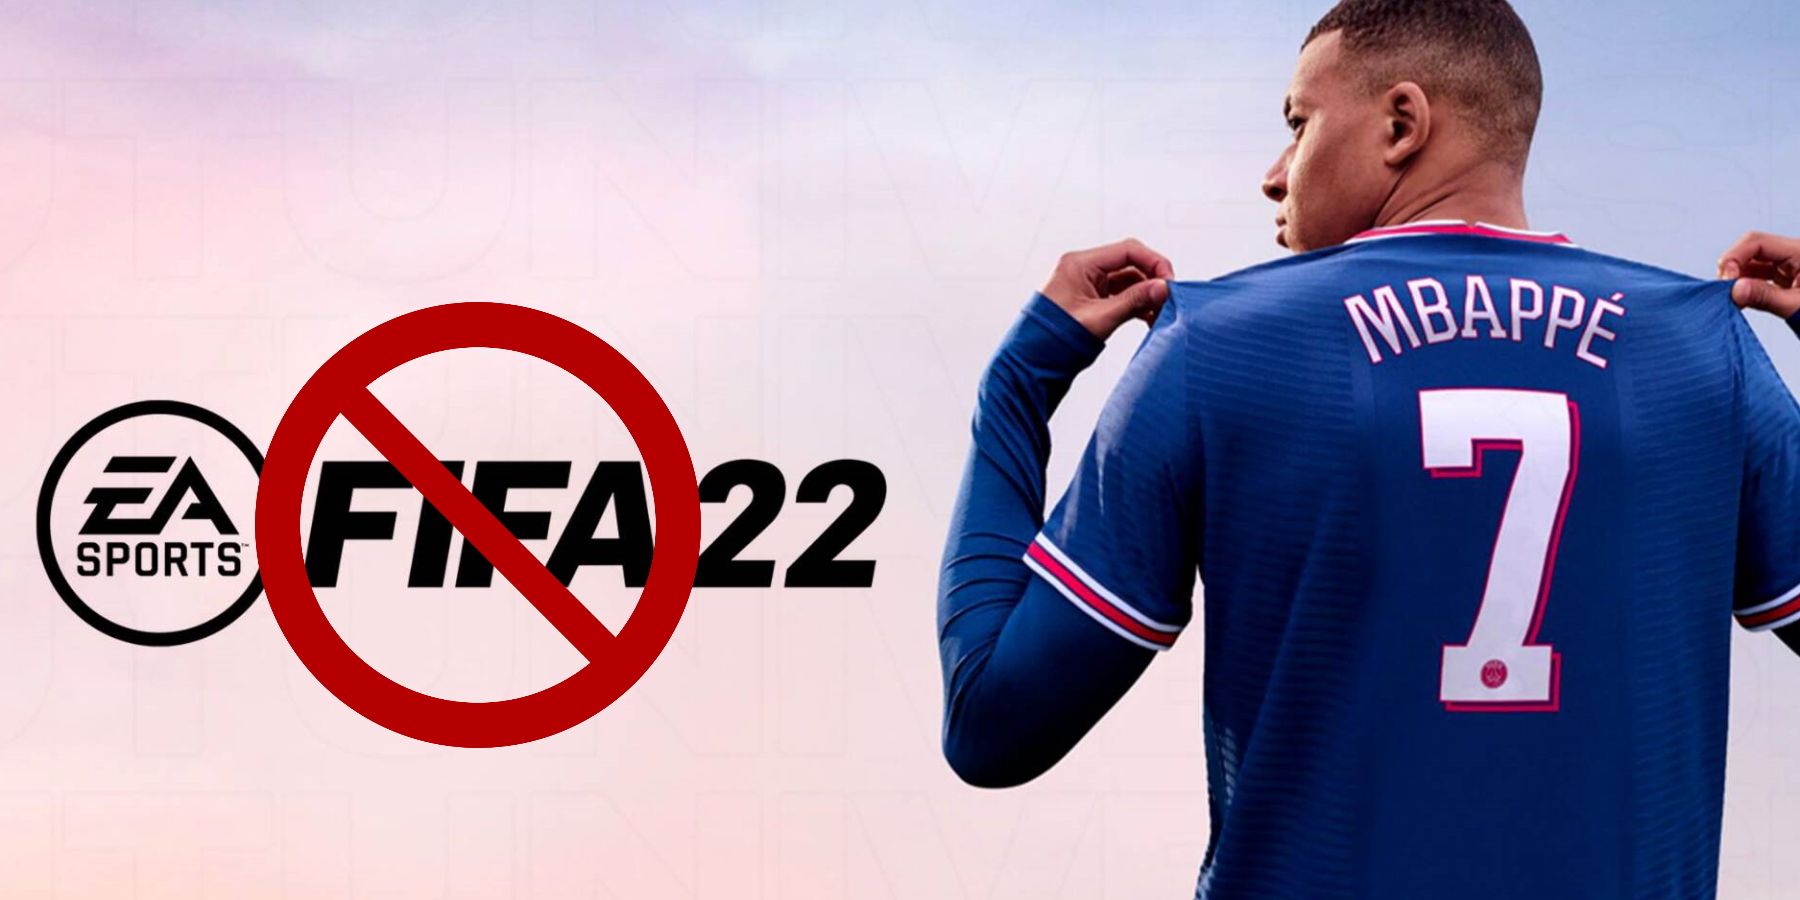 fifa-22-ea-sports-four-billion